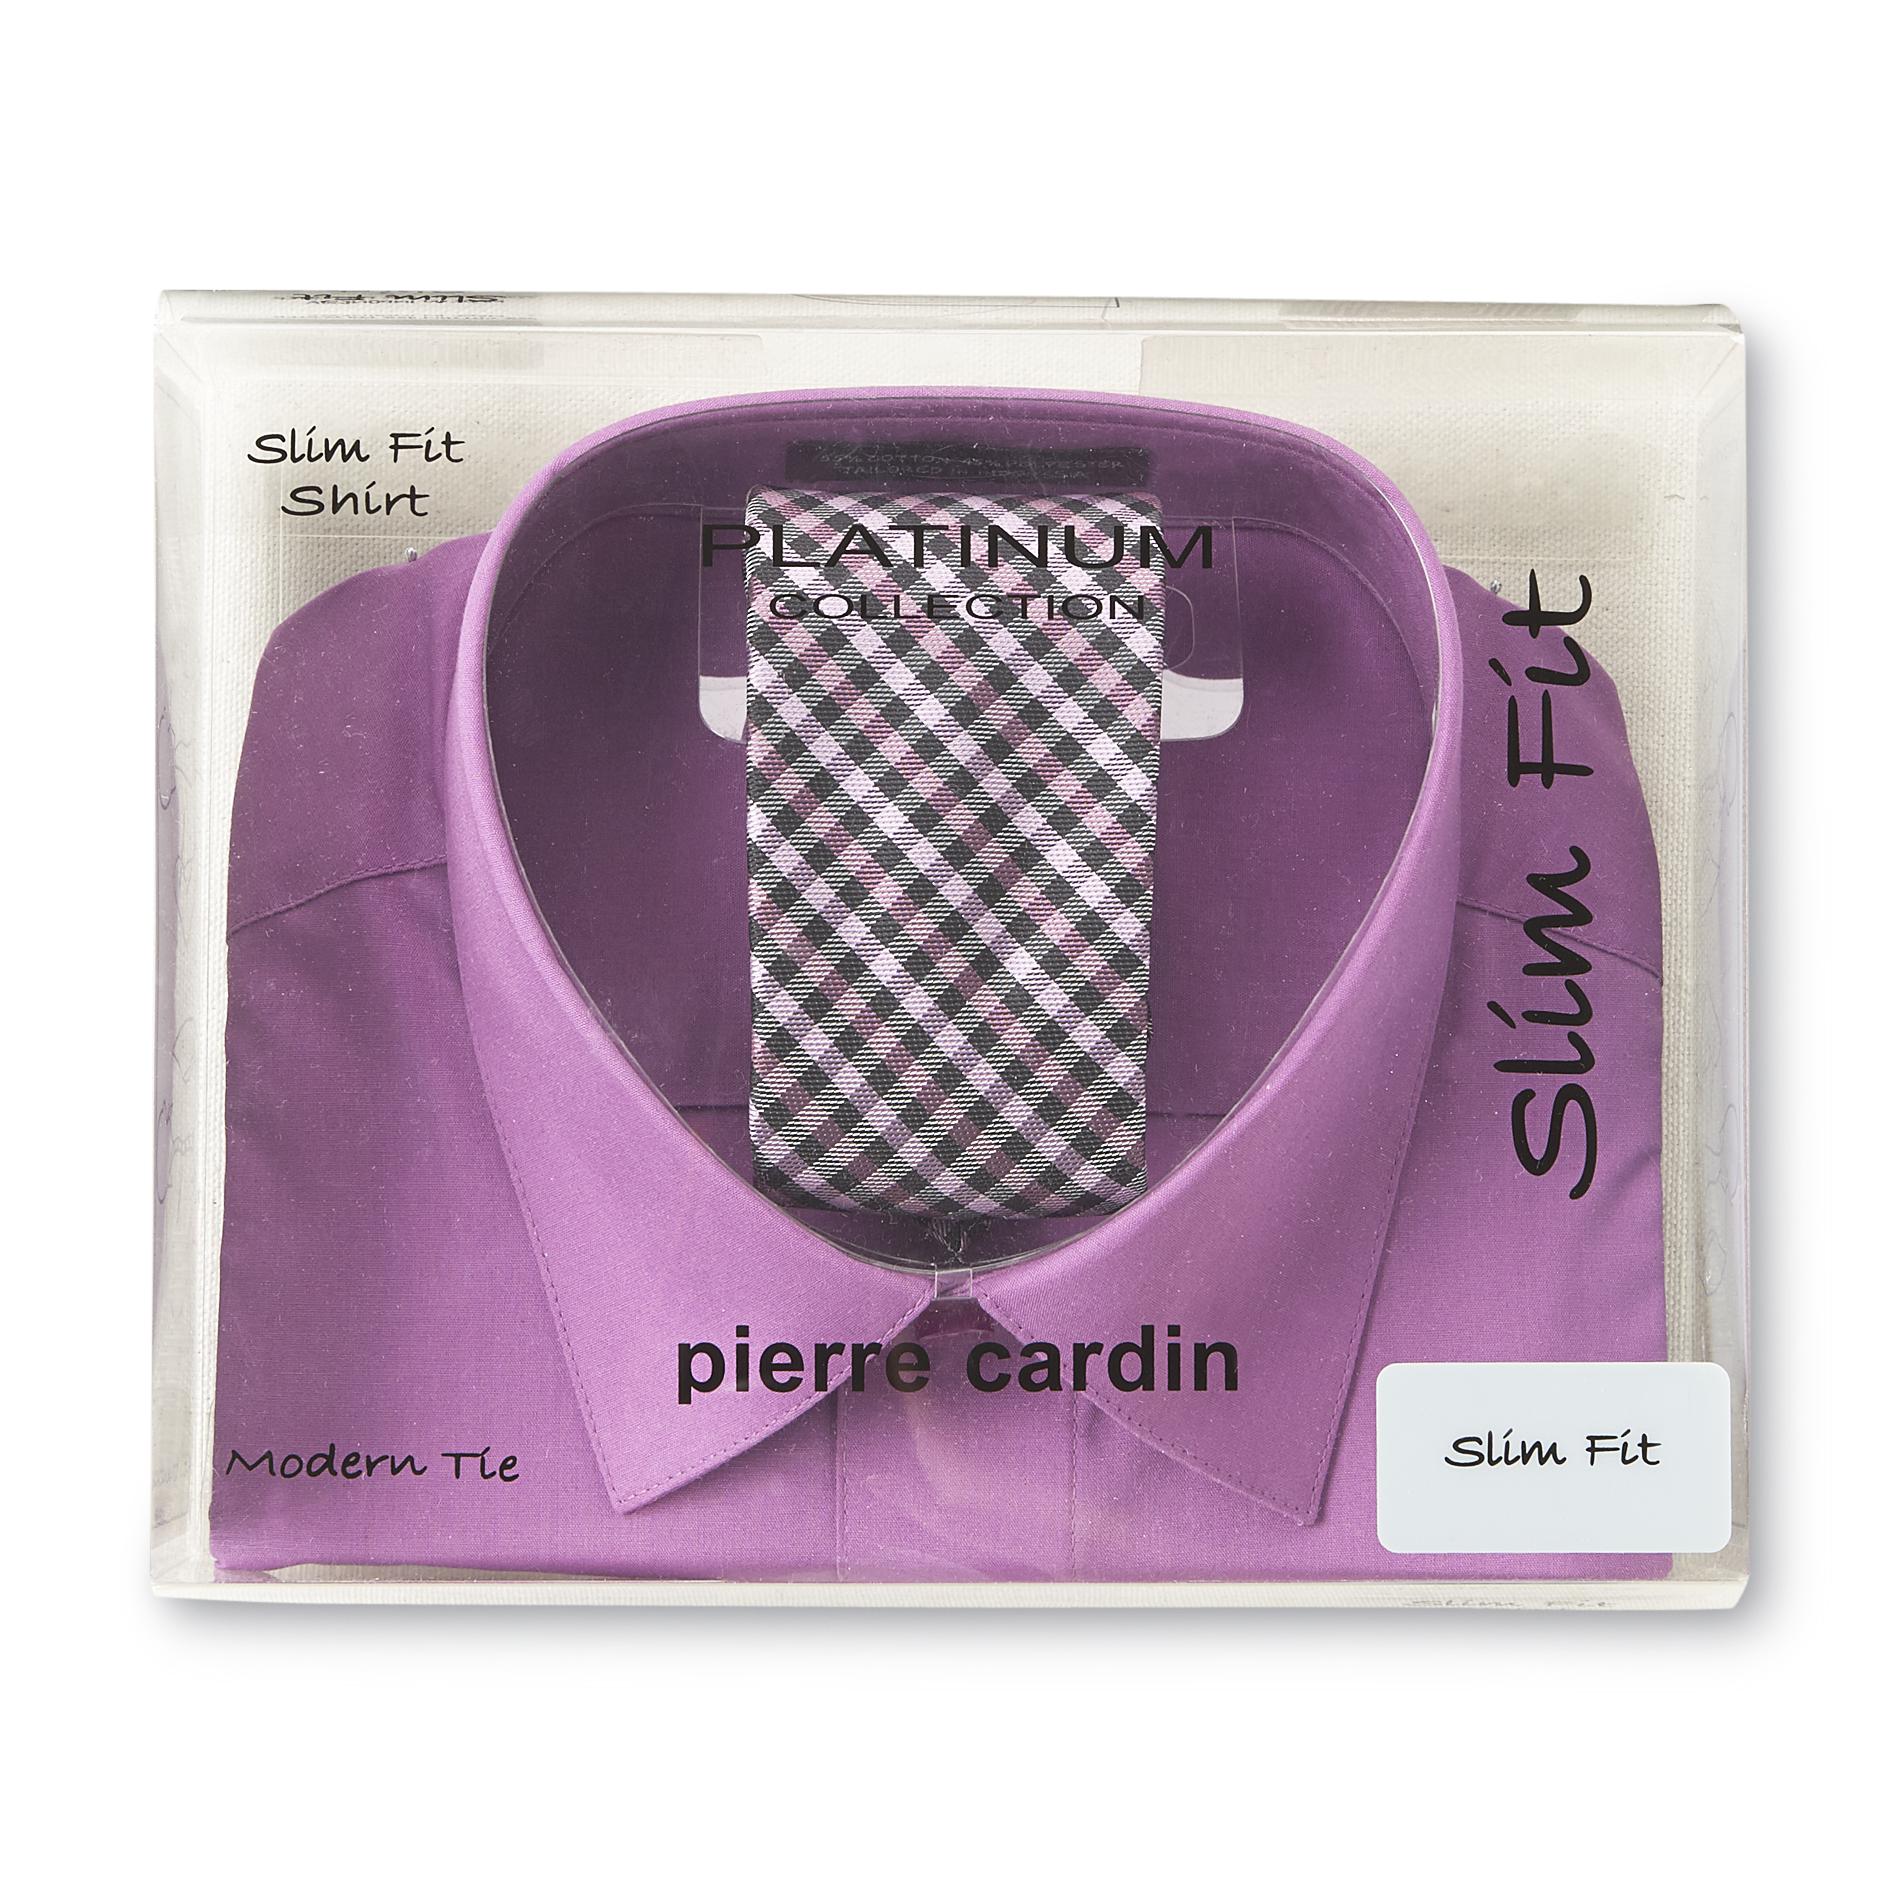 Pierre Cardin Men's Slim Fit Shirt & Tie - Checkered